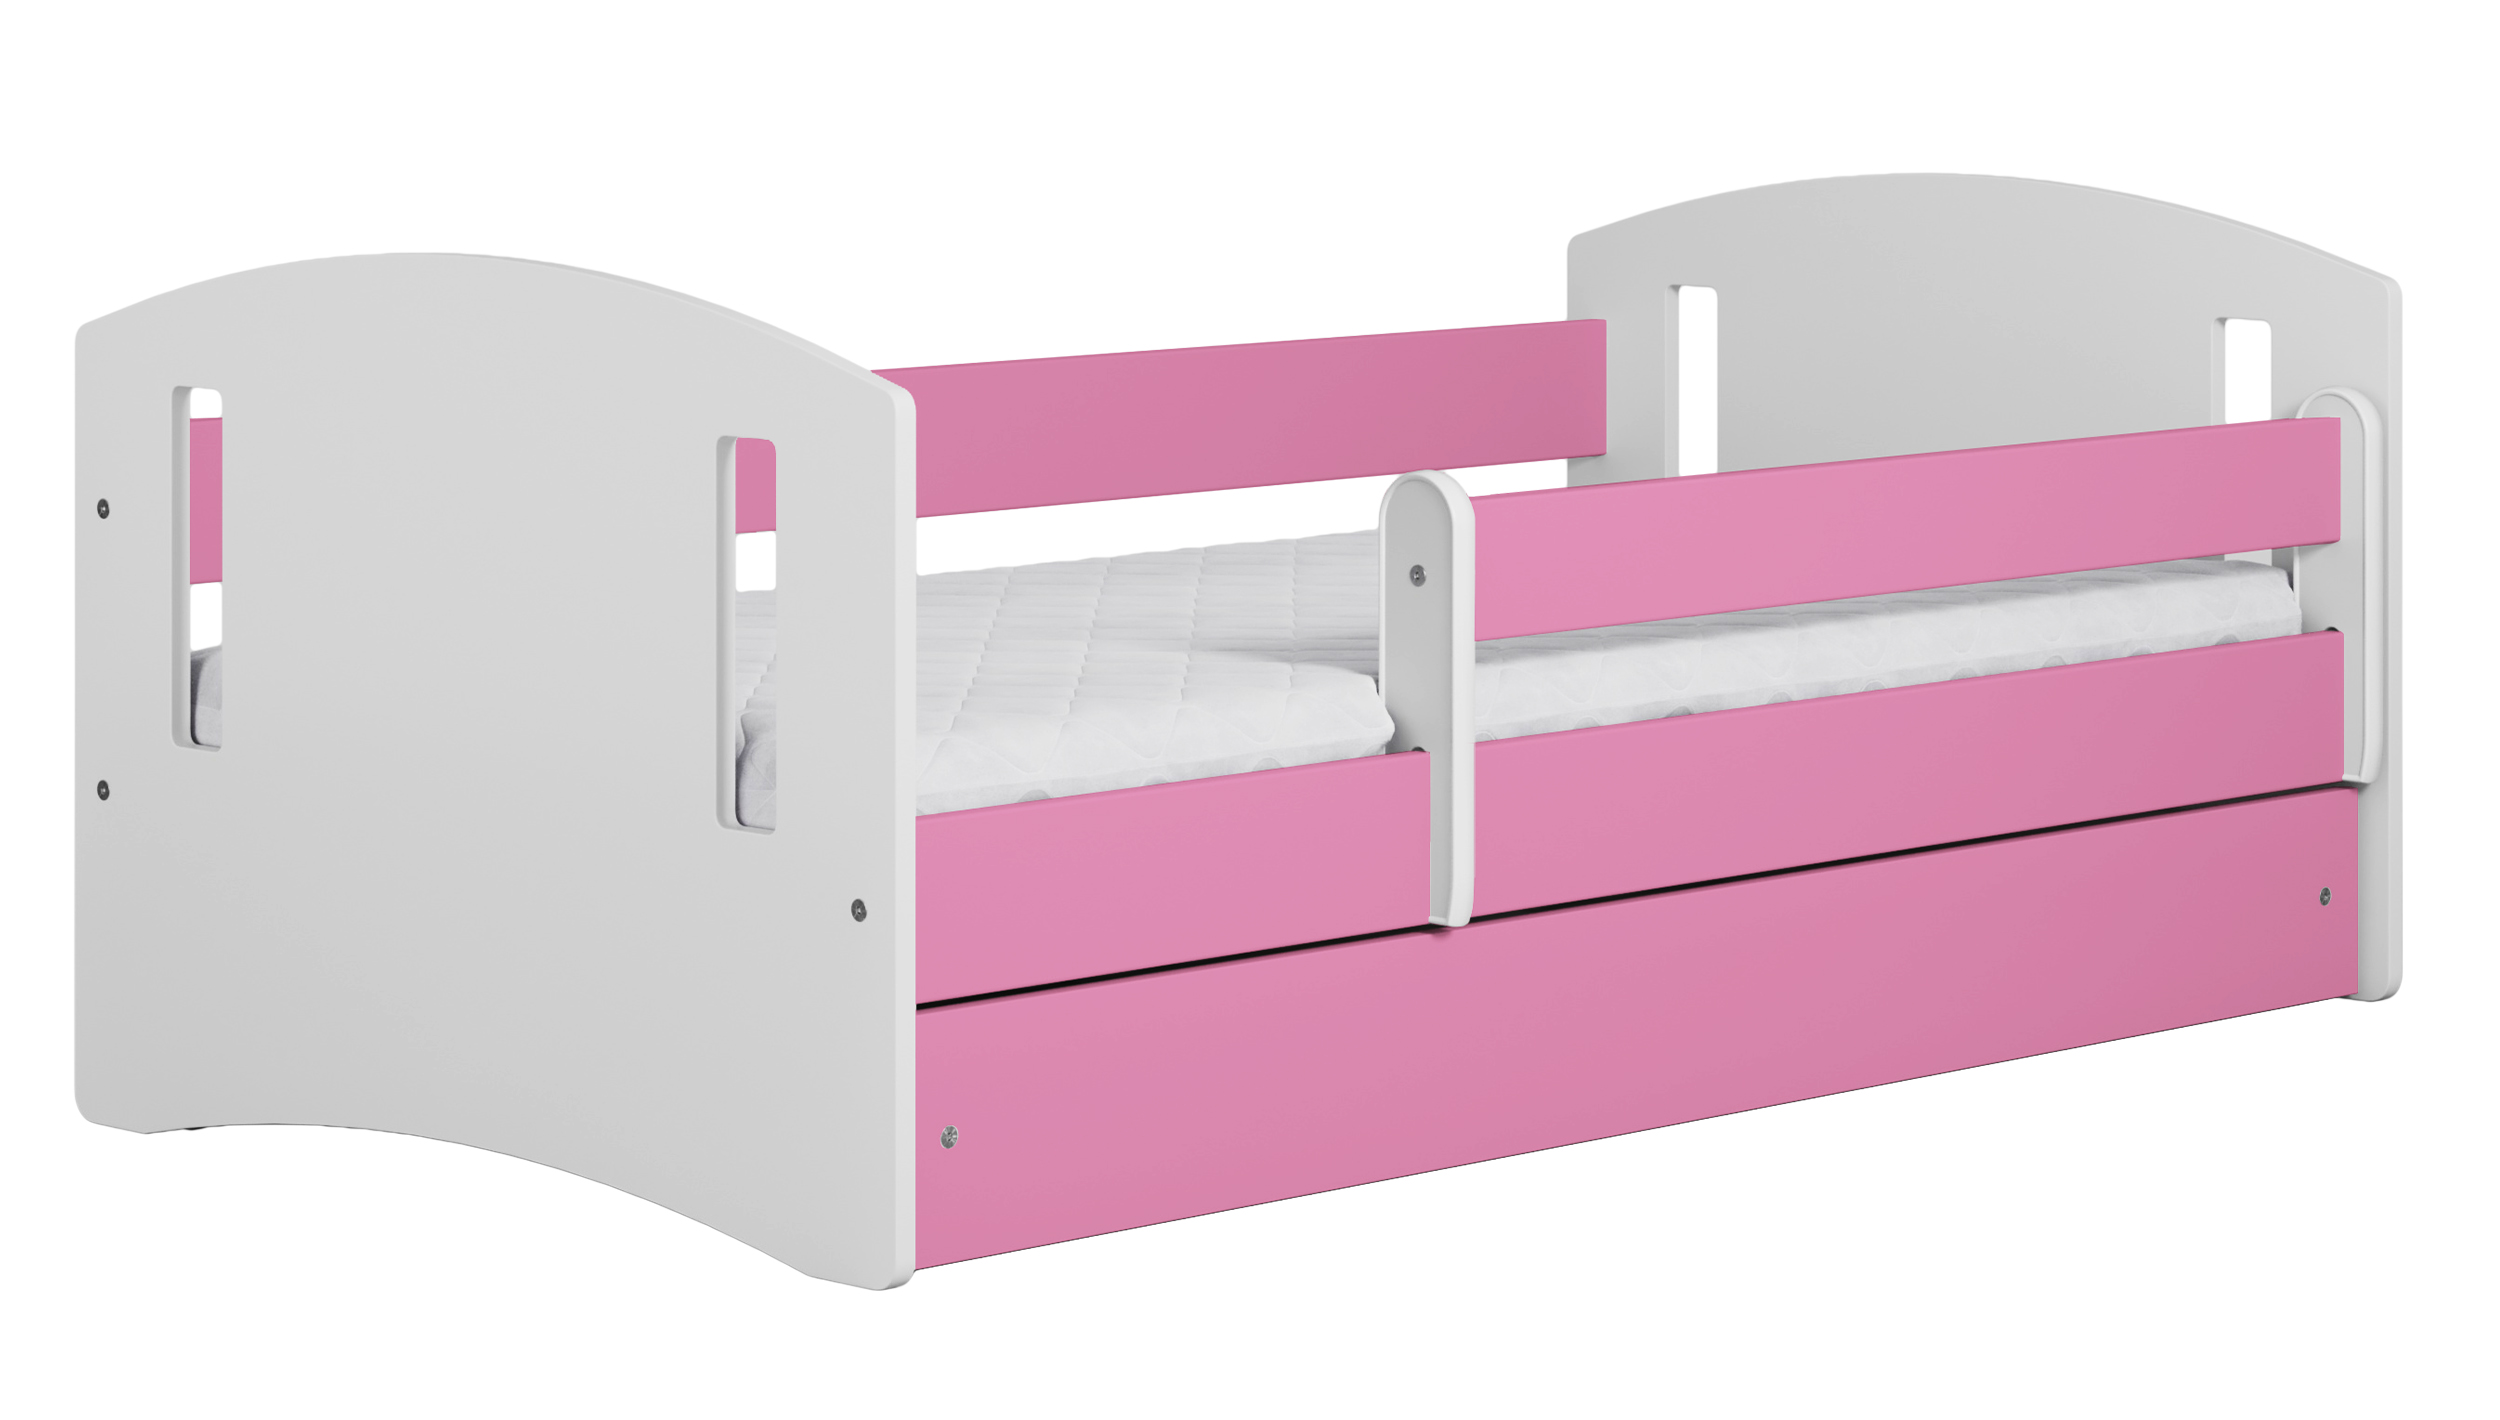 Kinderbett MIRRET weiß/pink mit Rausfallschutz 